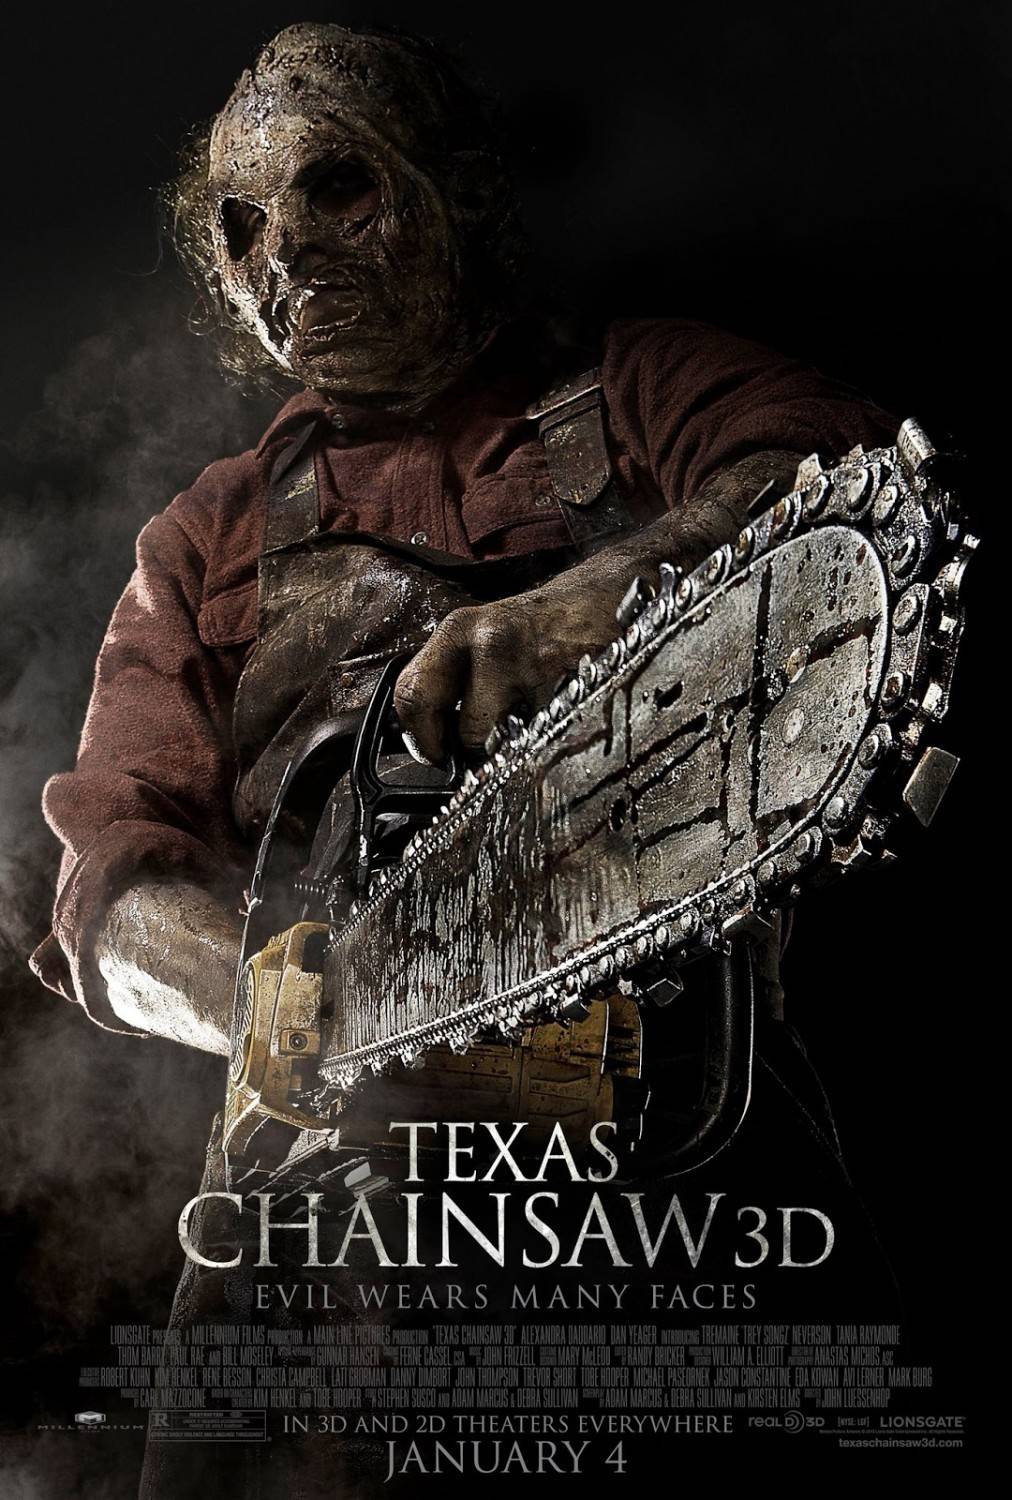 Техасская резня бензопилой 3D / Texas Chainsaw 3D (2013) отзывы. Рецензии. Новости кино. Актеры фильма Техасская резня бензопилой 3D. Отзывы о фильме Техасская резня бензопилой 3D